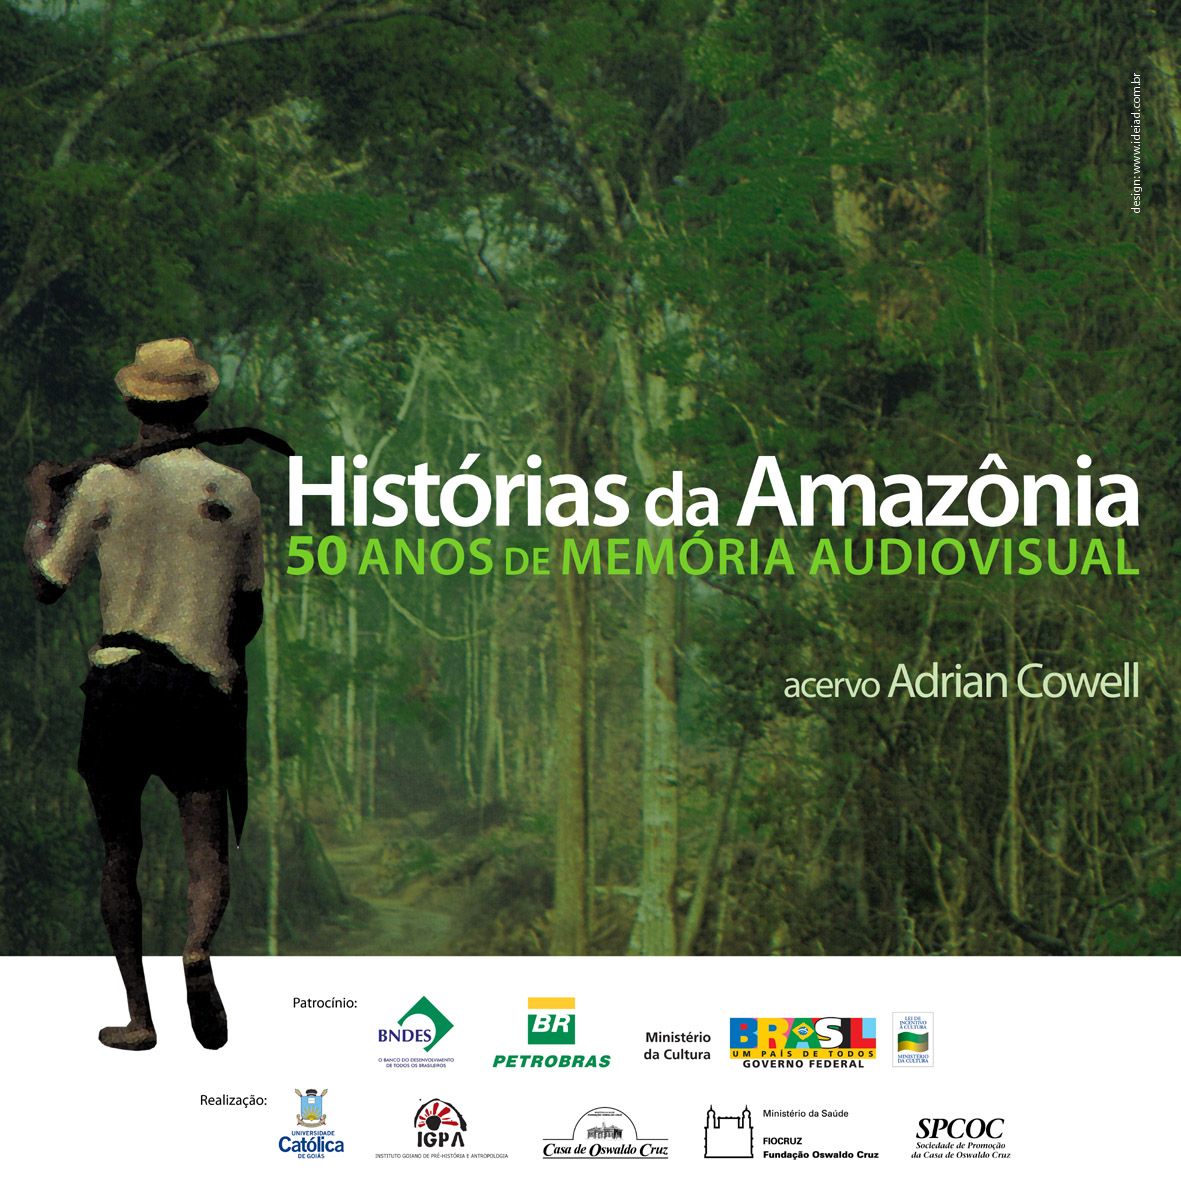 Acervo sobre História da Amazônia, do cineasta inglês Adrian Cowell, é destaque em programação de canal de tv